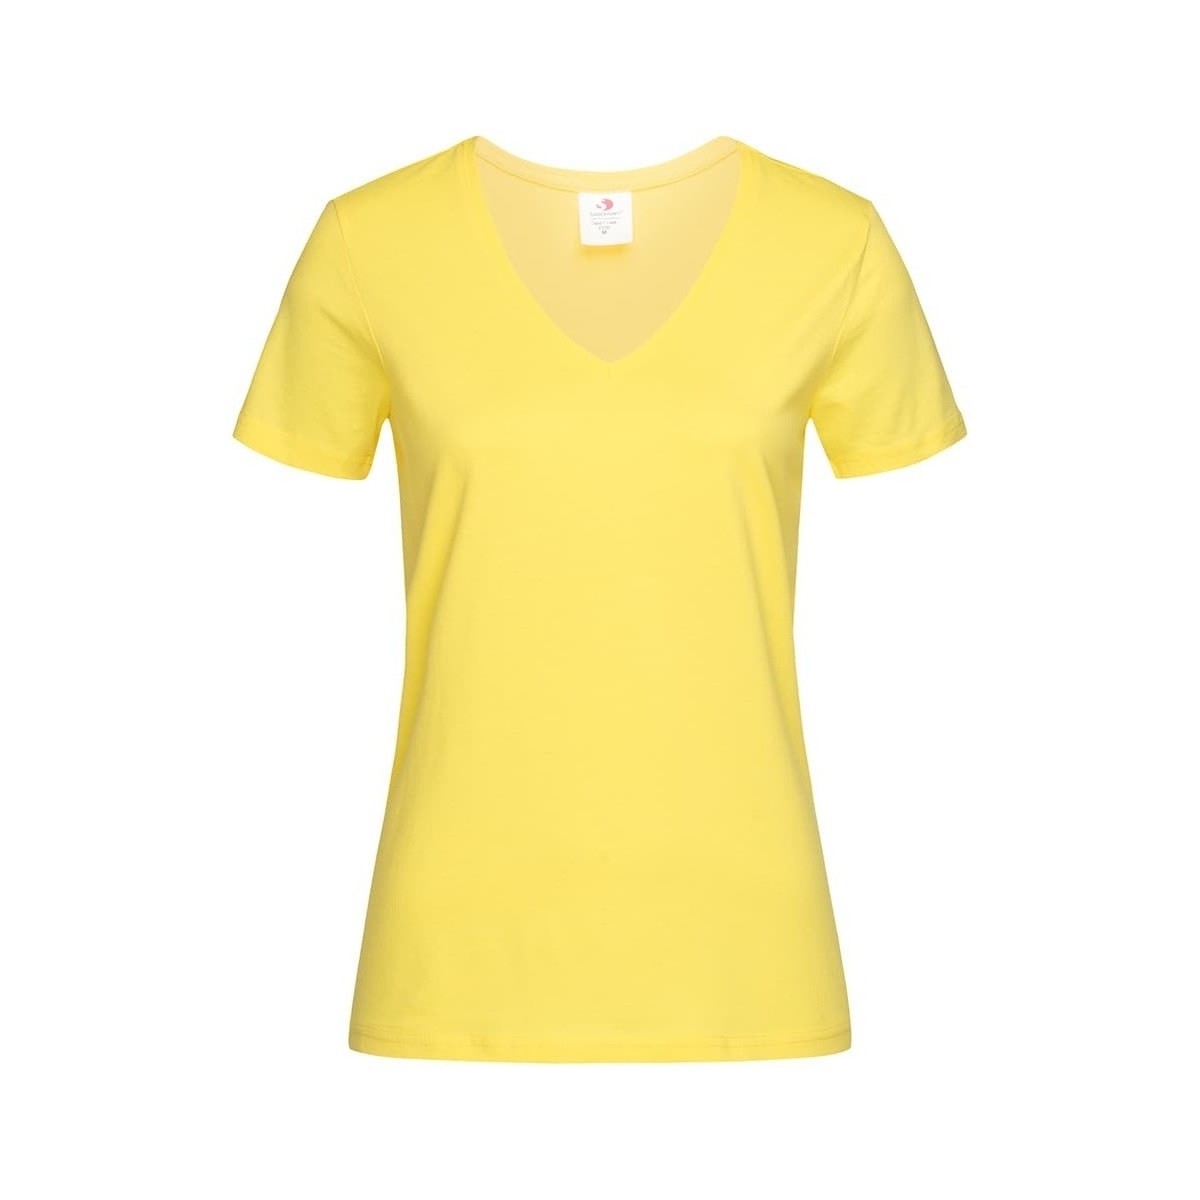 Vêtements Femme T-shirts manches longues Stedman AB279 Multicolore